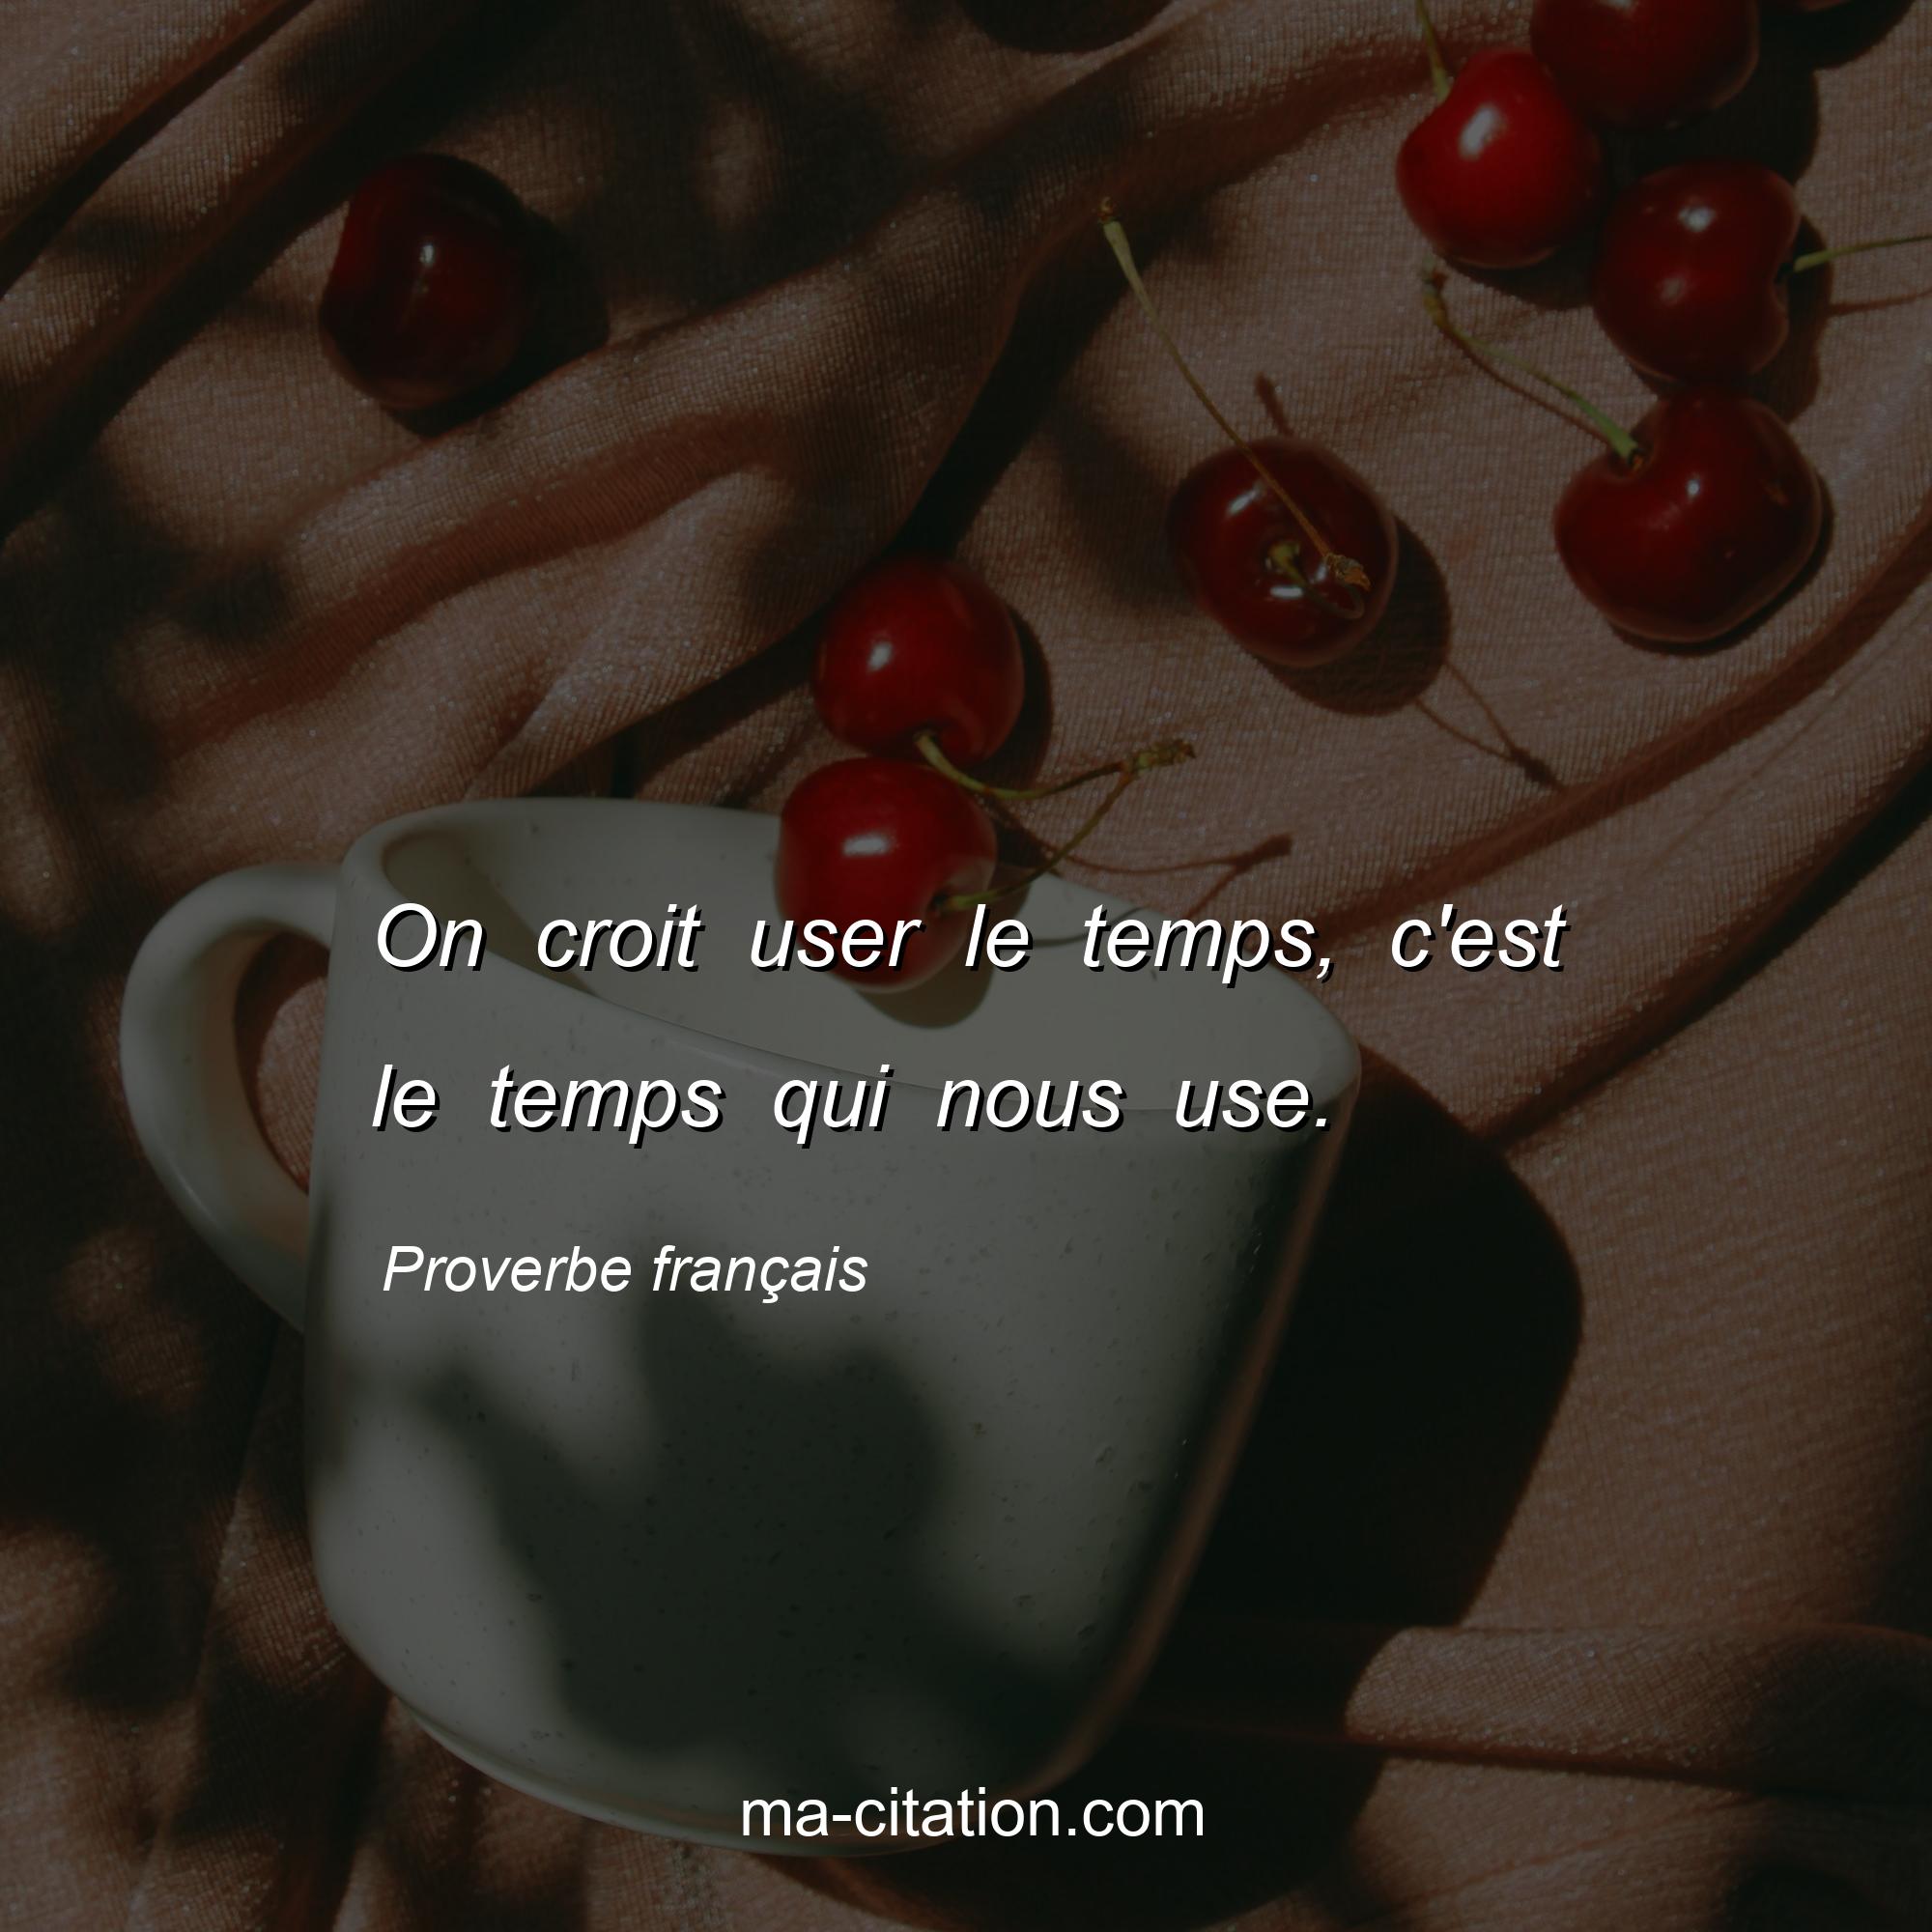 Proverbe français : On croit user le temps, c'est le temps qui nous use.